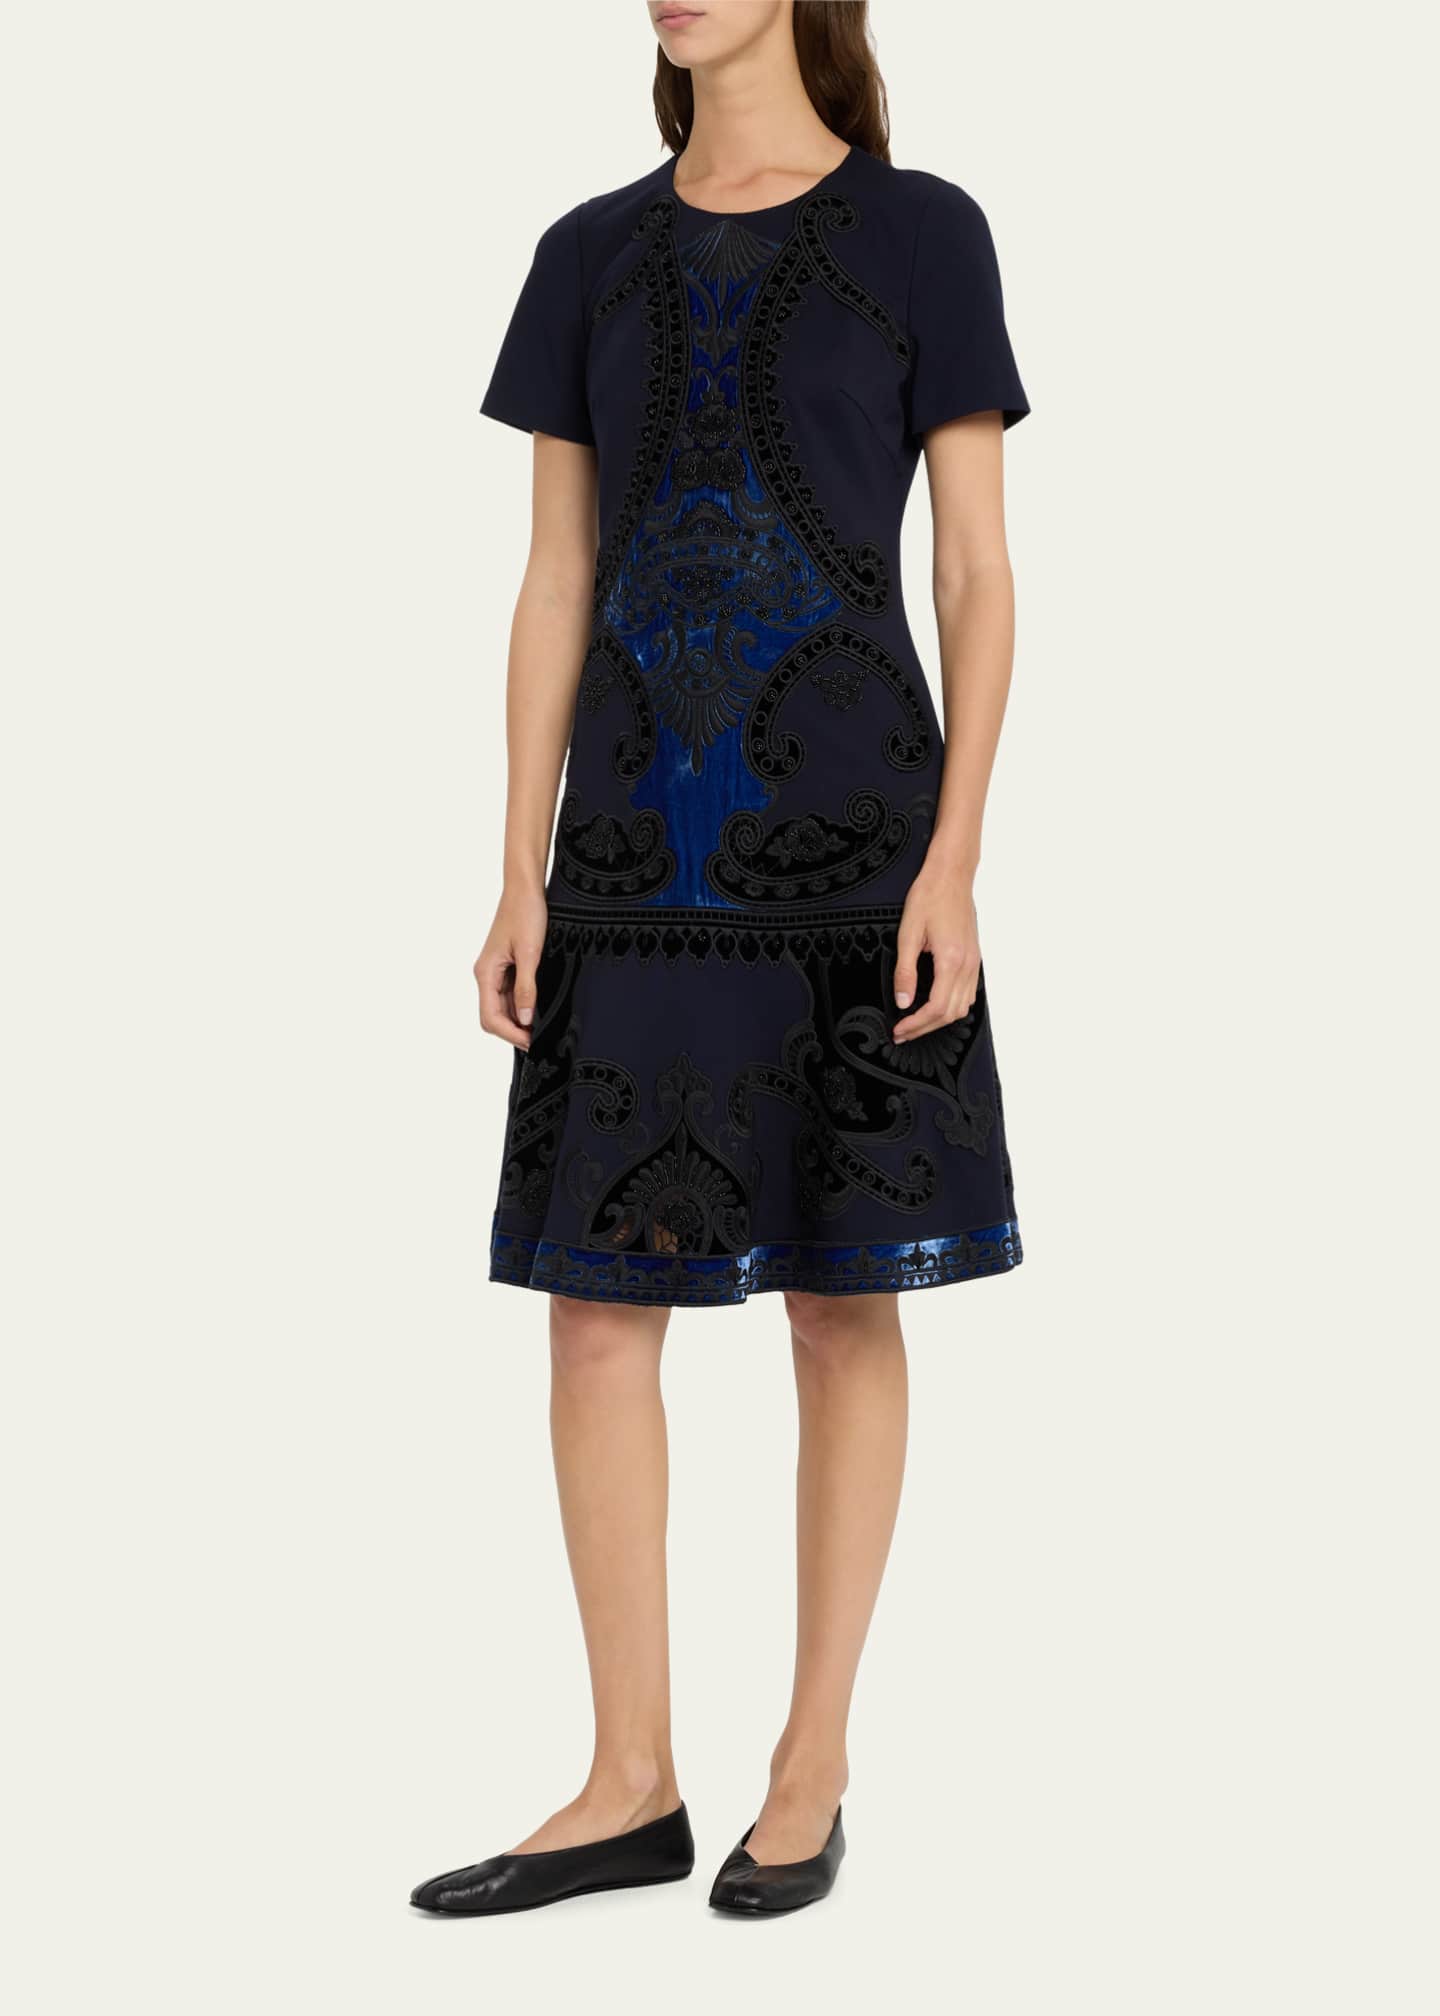 Kobi Halperin Blaine Velvet Embroidered Short-Sleeve Dress - Bergdorf ...